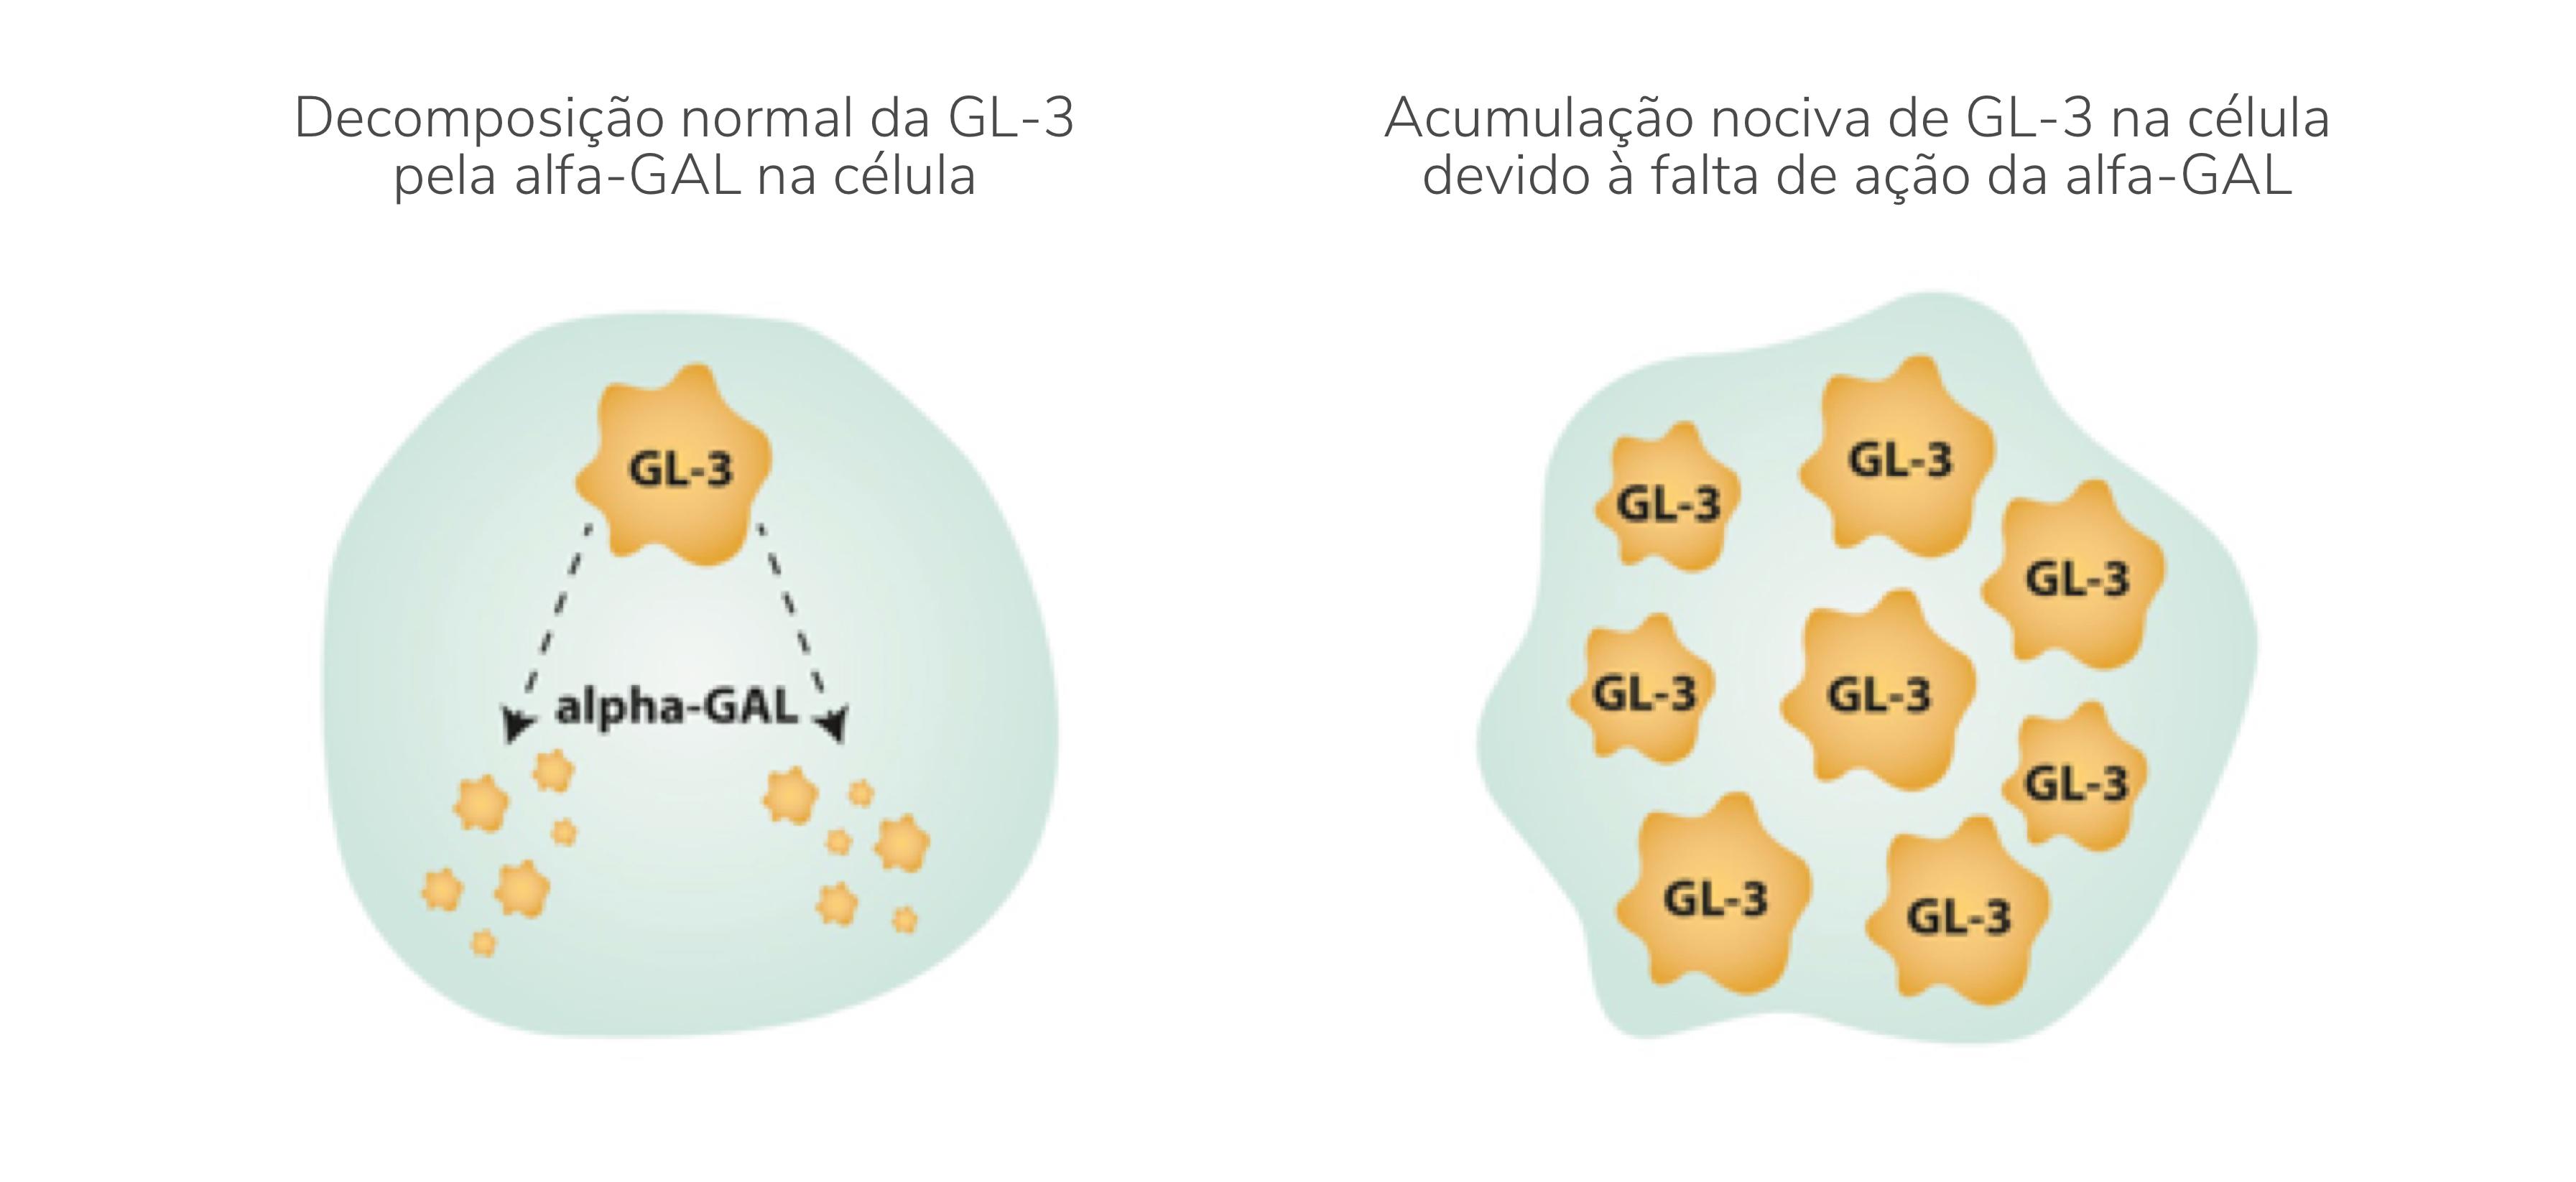 Acumulação de GL-3 devido à falta de alfa-GAL